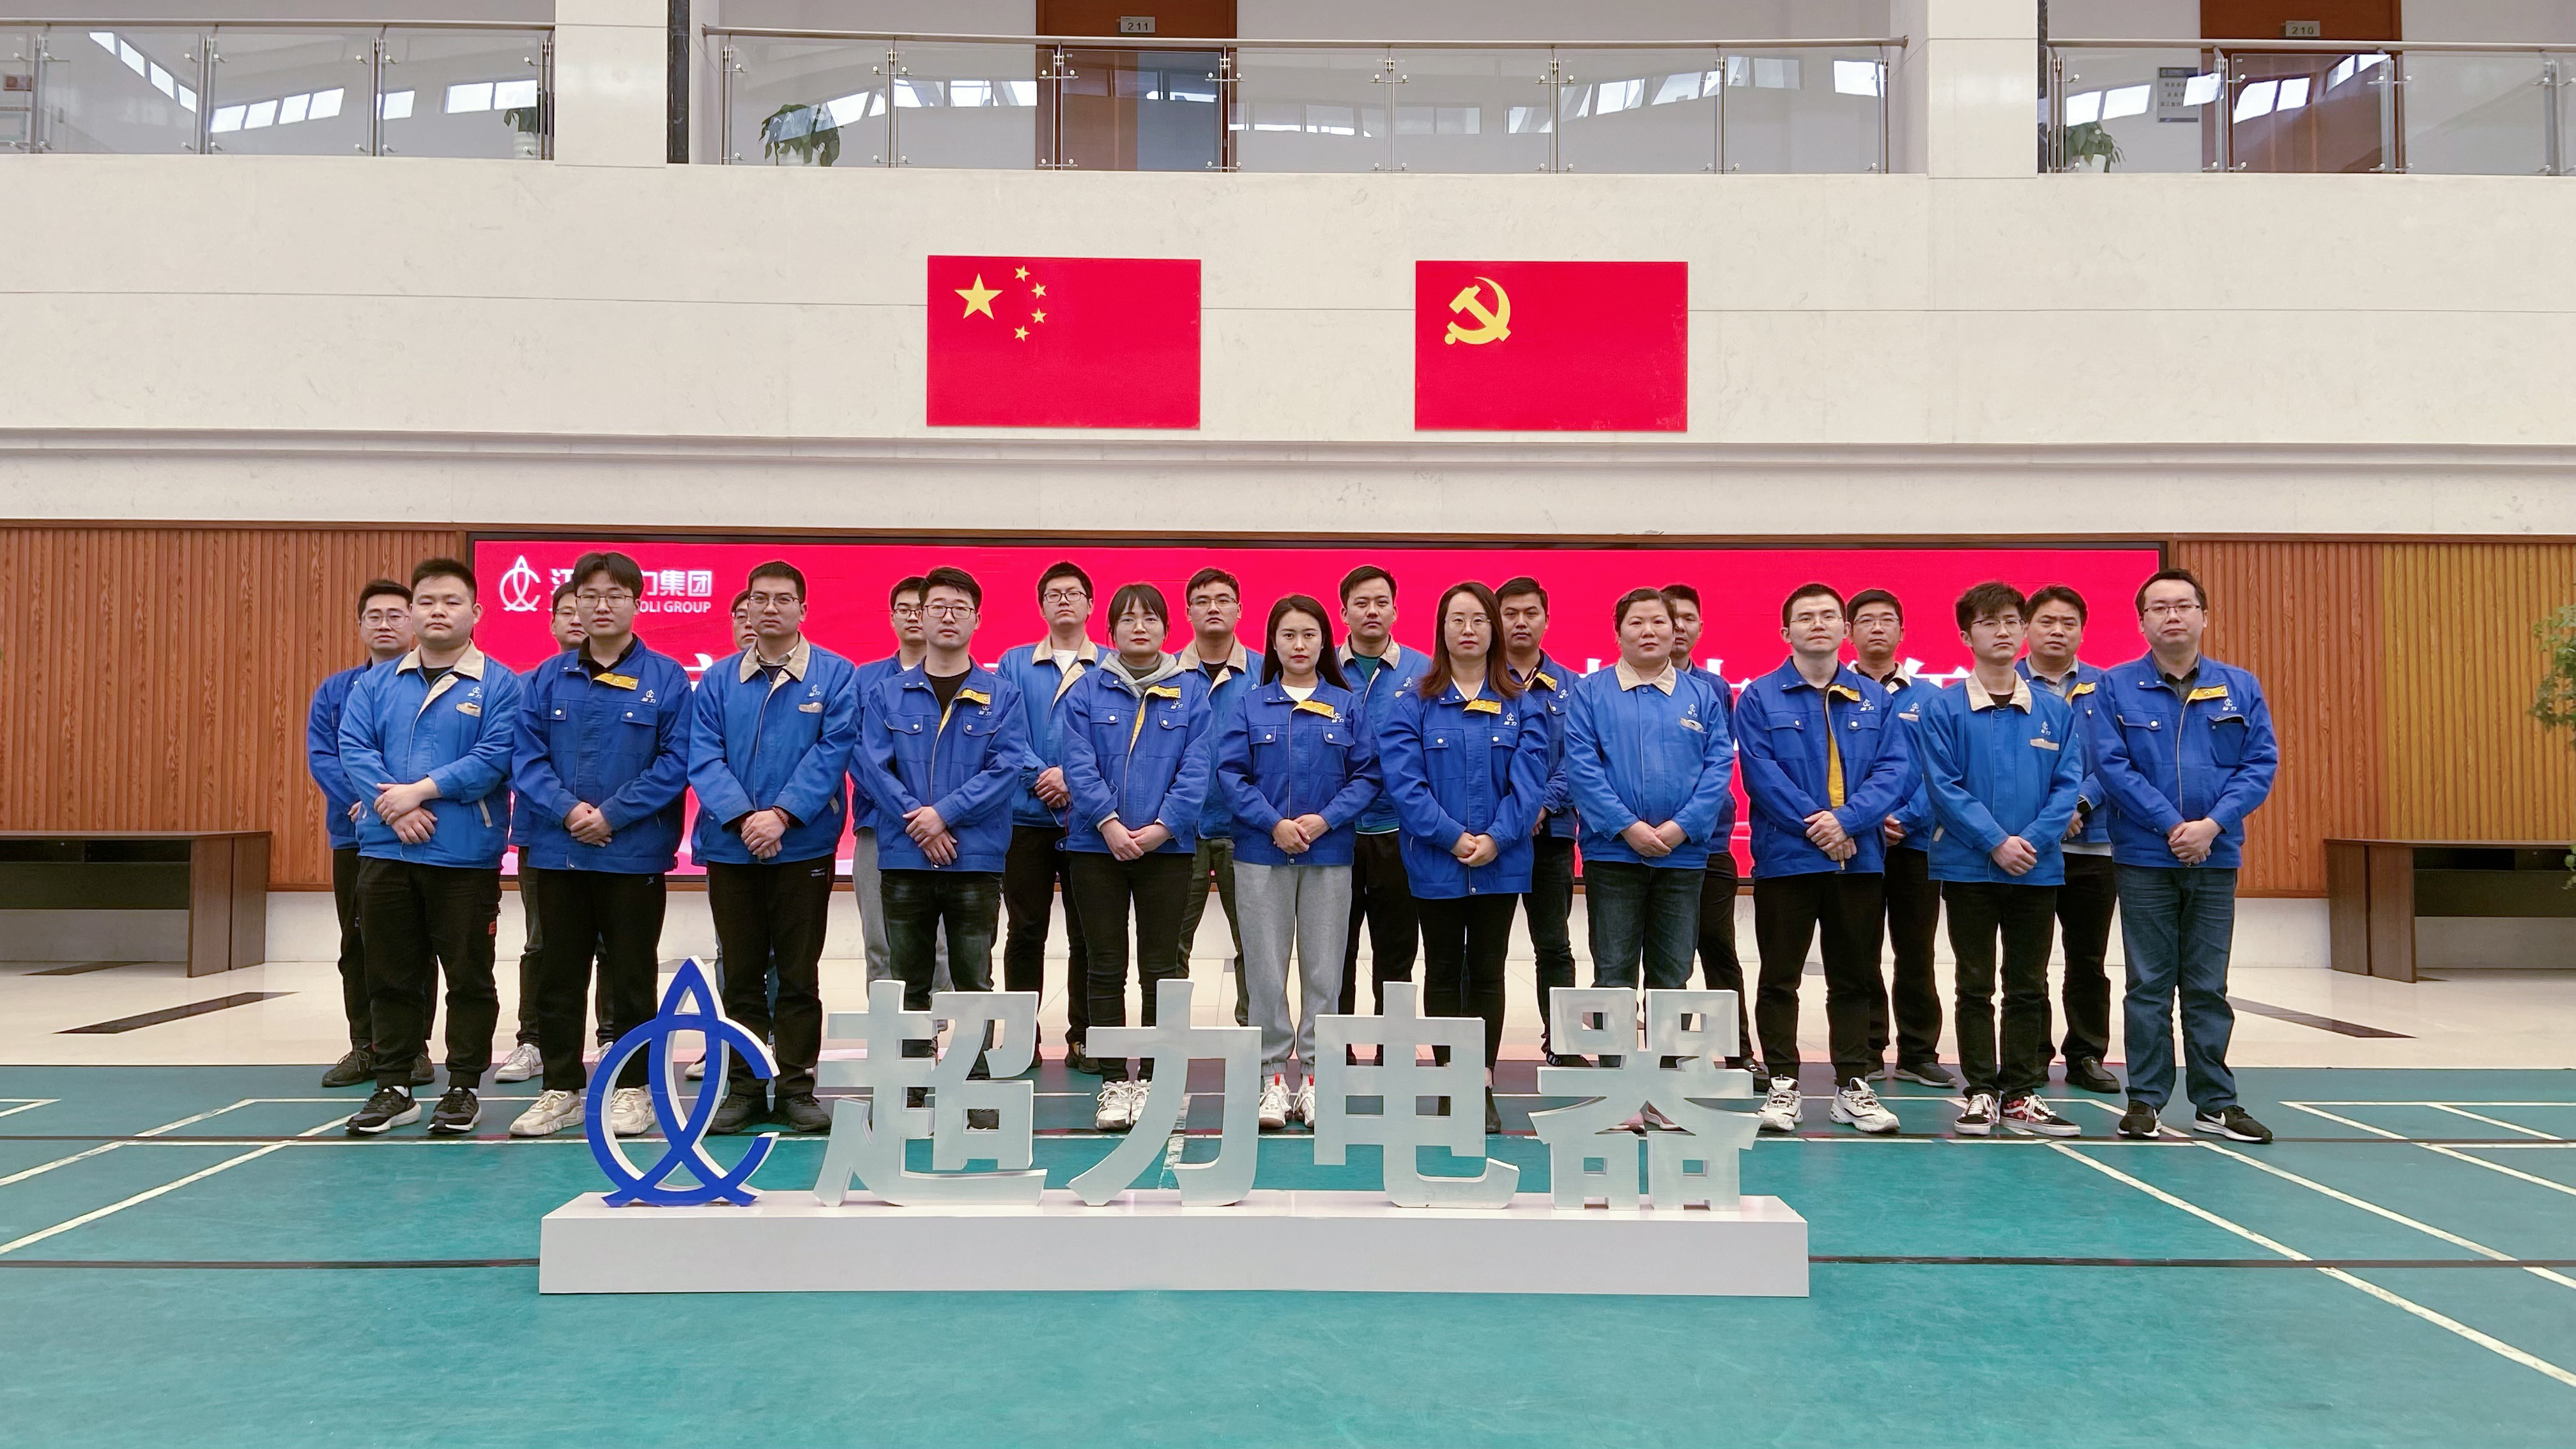 恭喜江蘇超力電器有限公司開發部榮獲鎮江市“工人先鋒號”榮譽